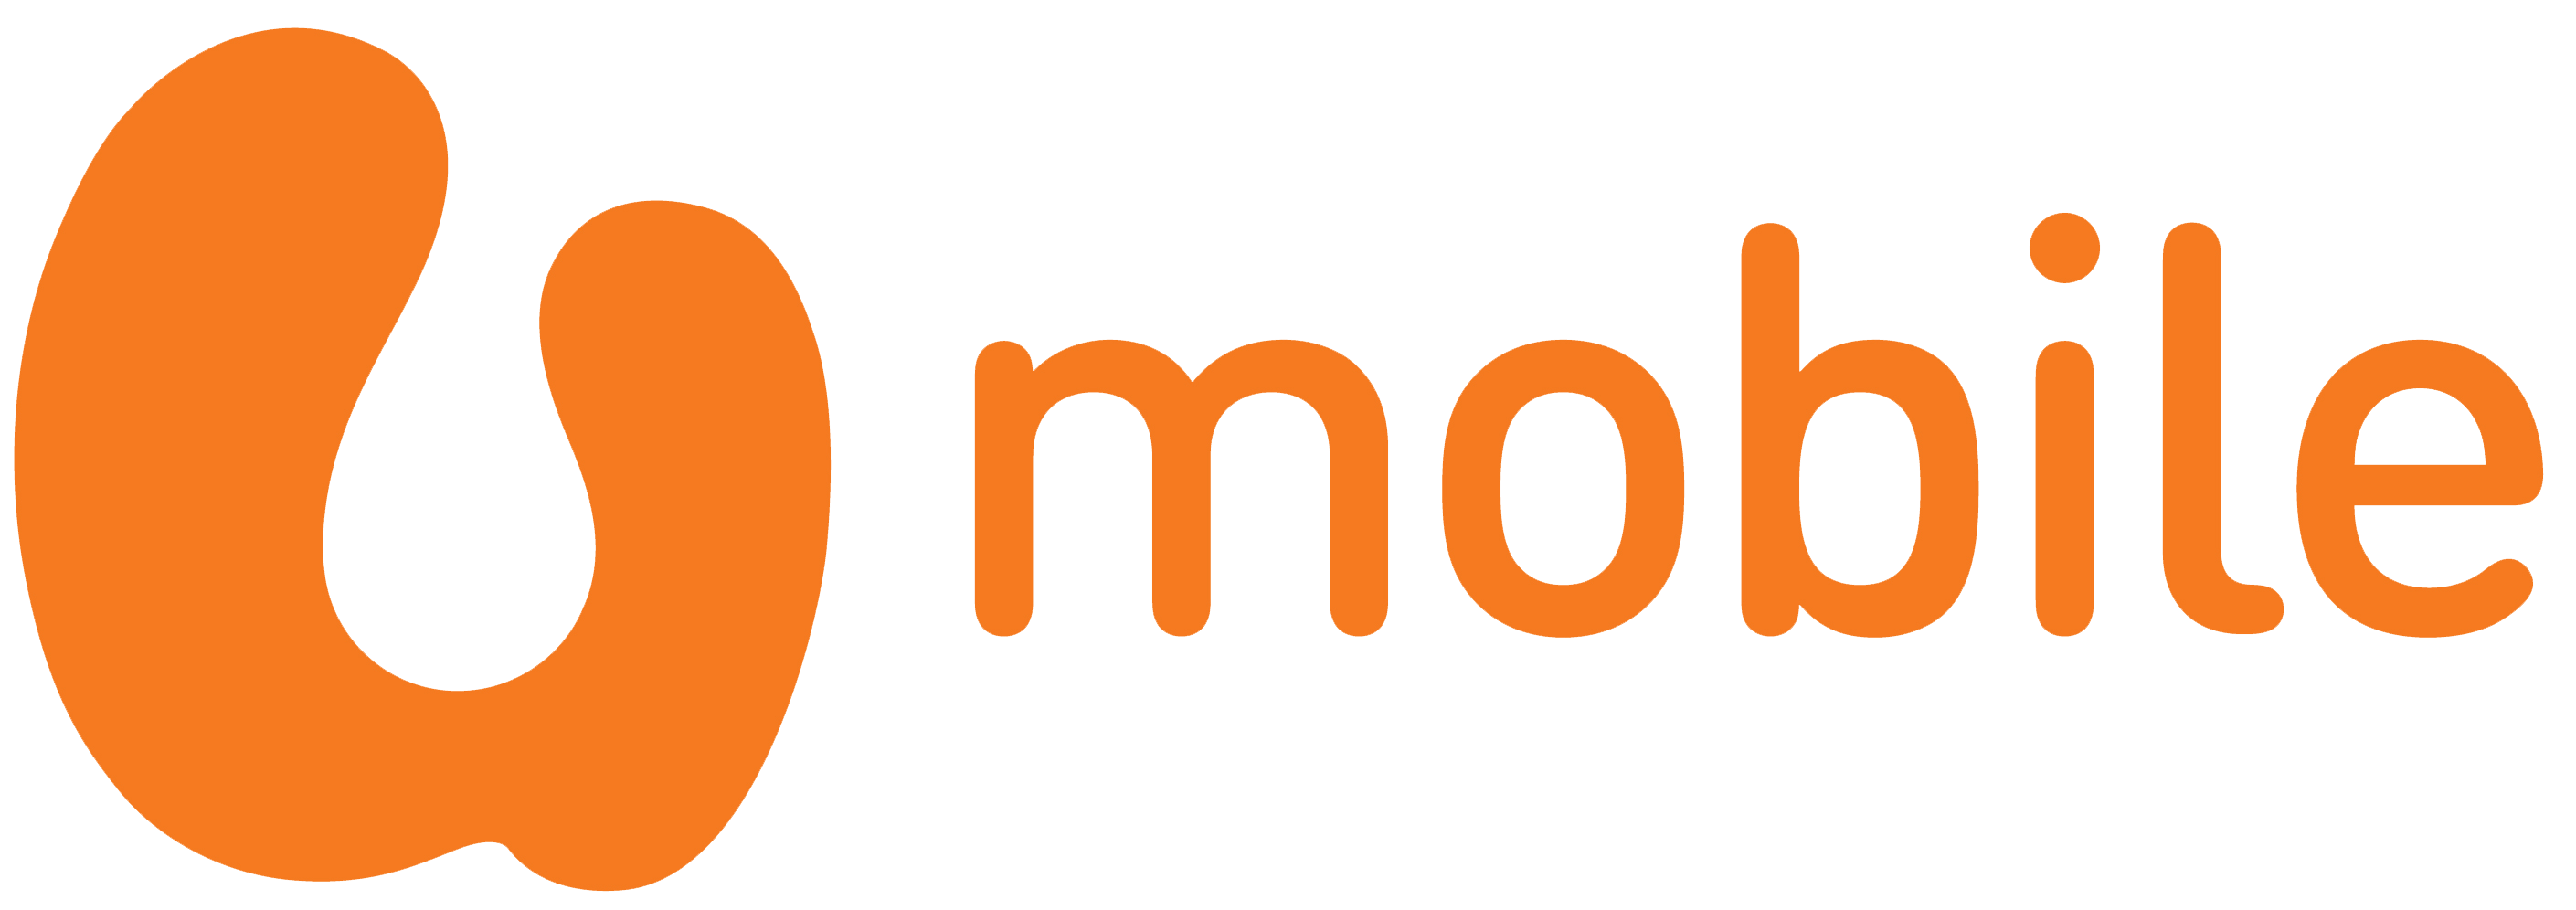 orange mobile logo png #1349